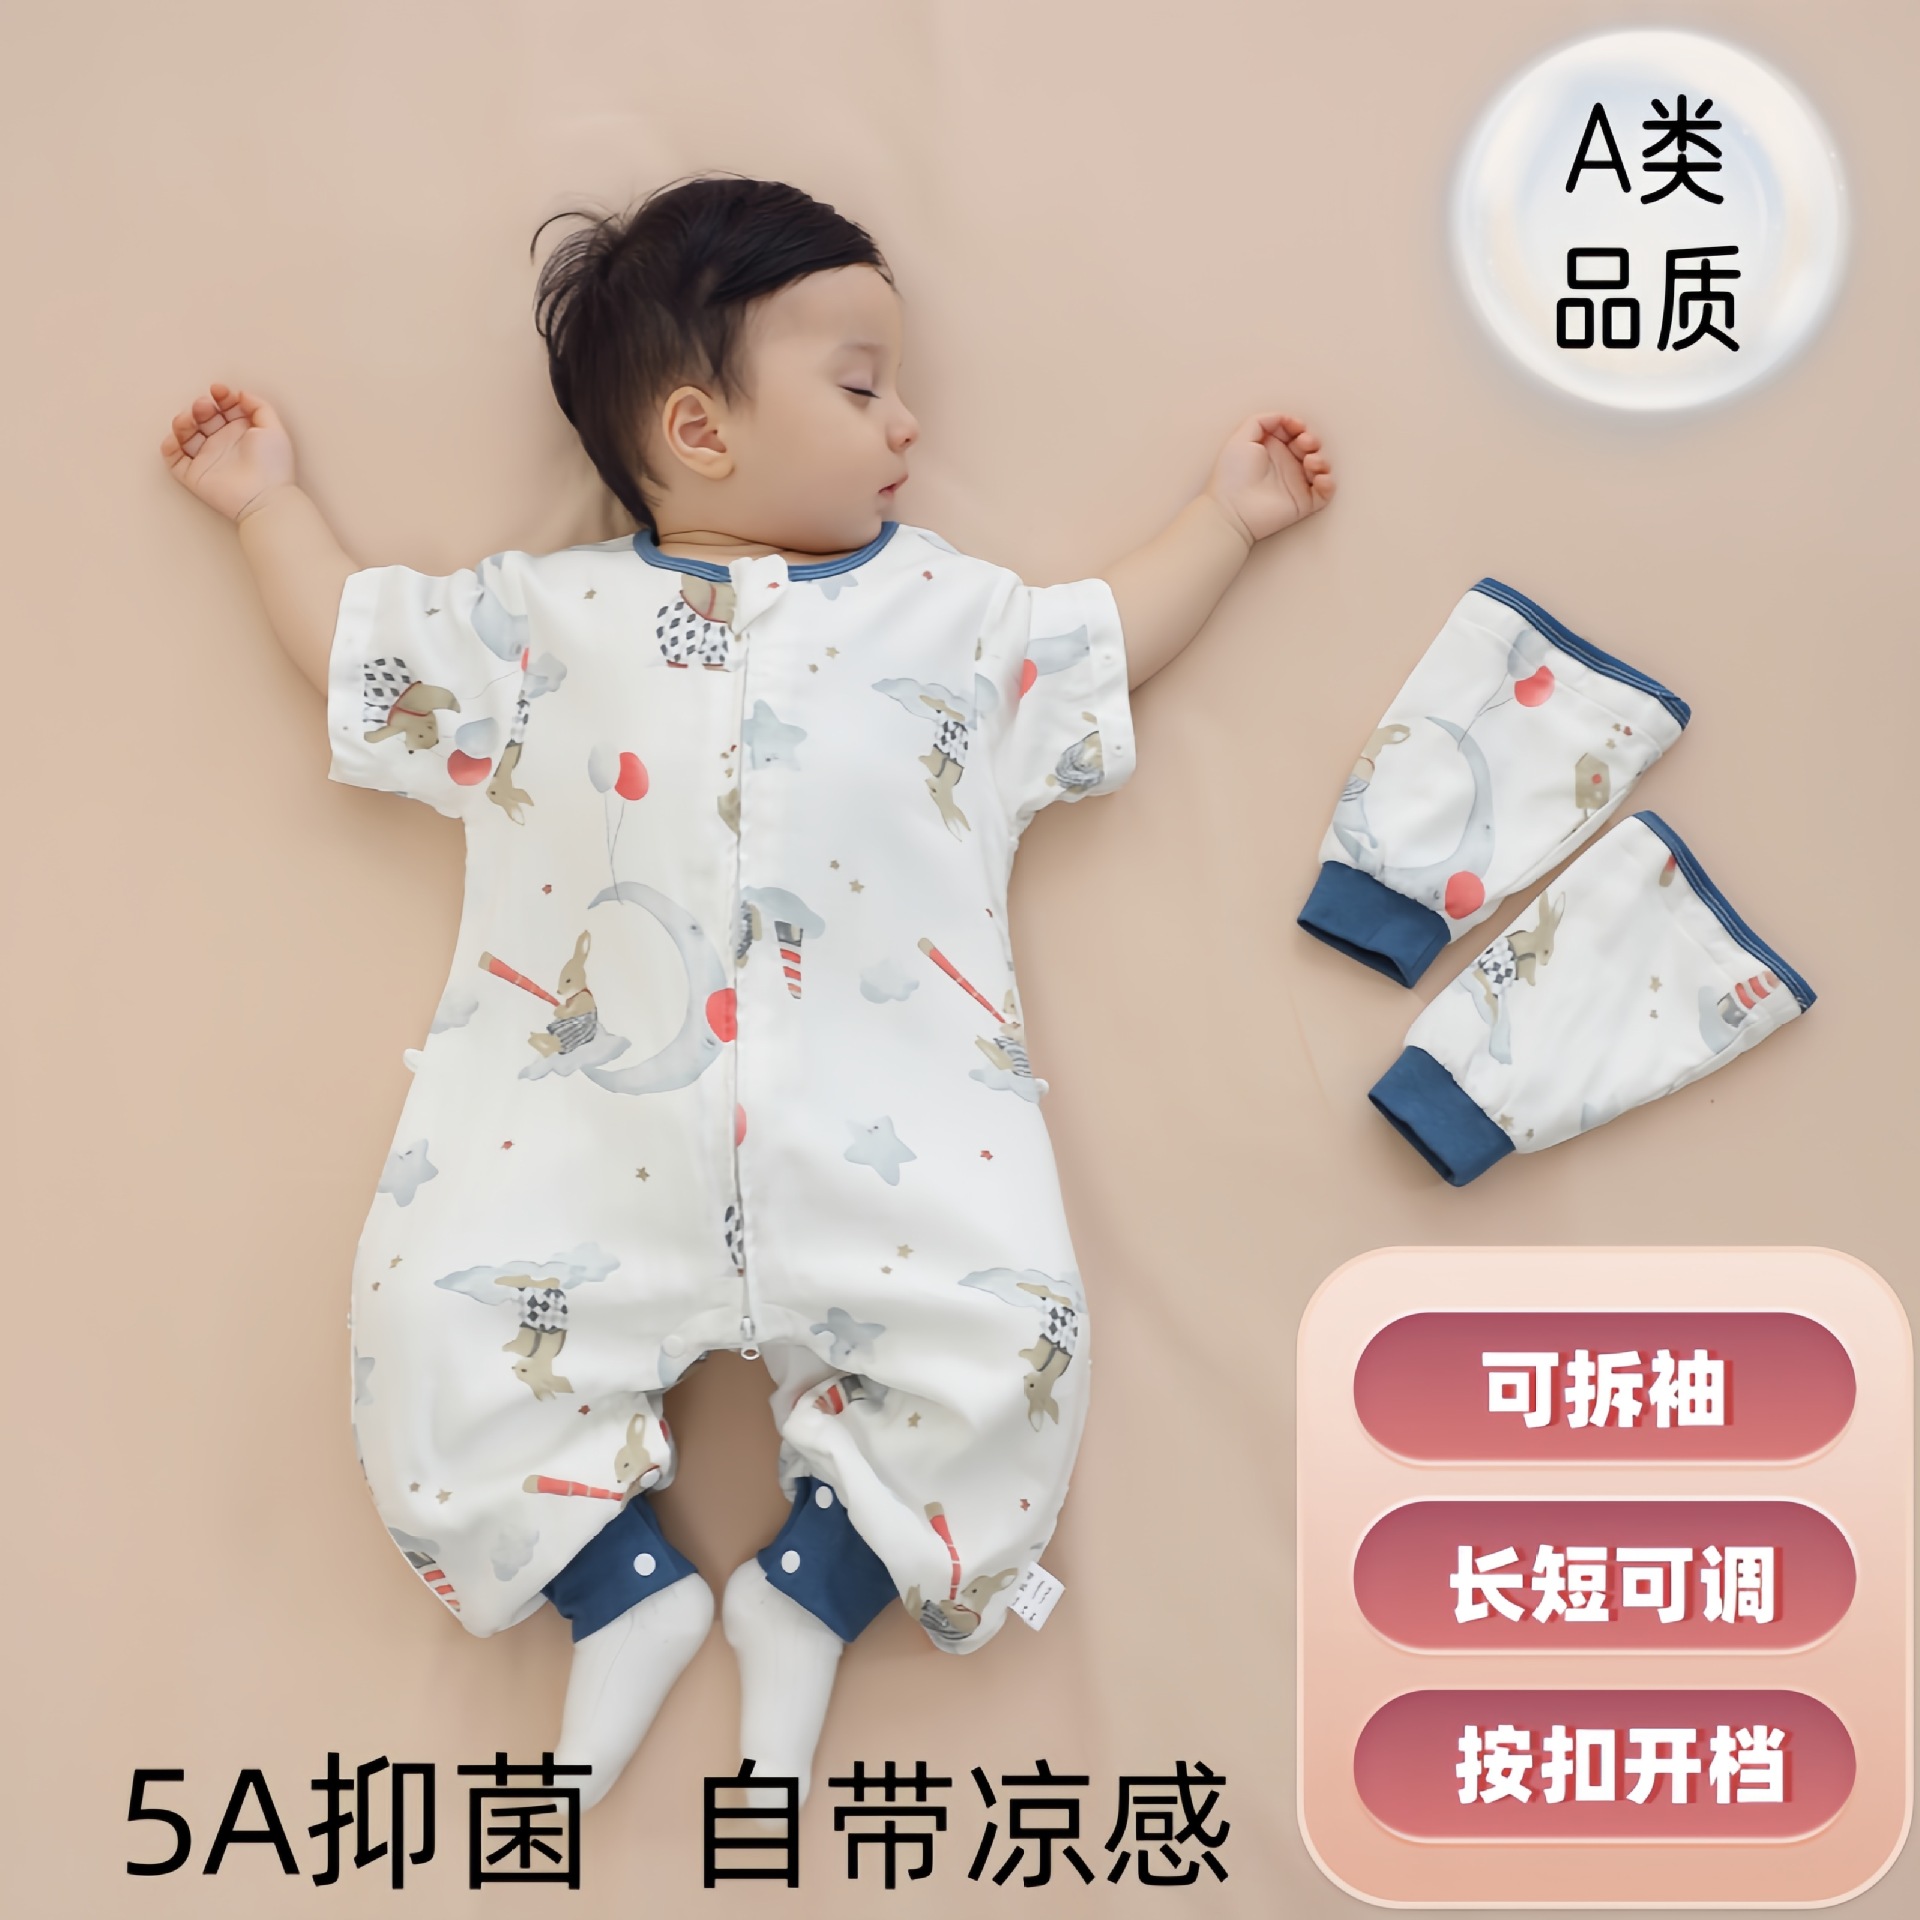 婴儿睡袋春夏秋a类竹棉纱布可拆透气防踢被分腿婴幼儿空调房睡袋